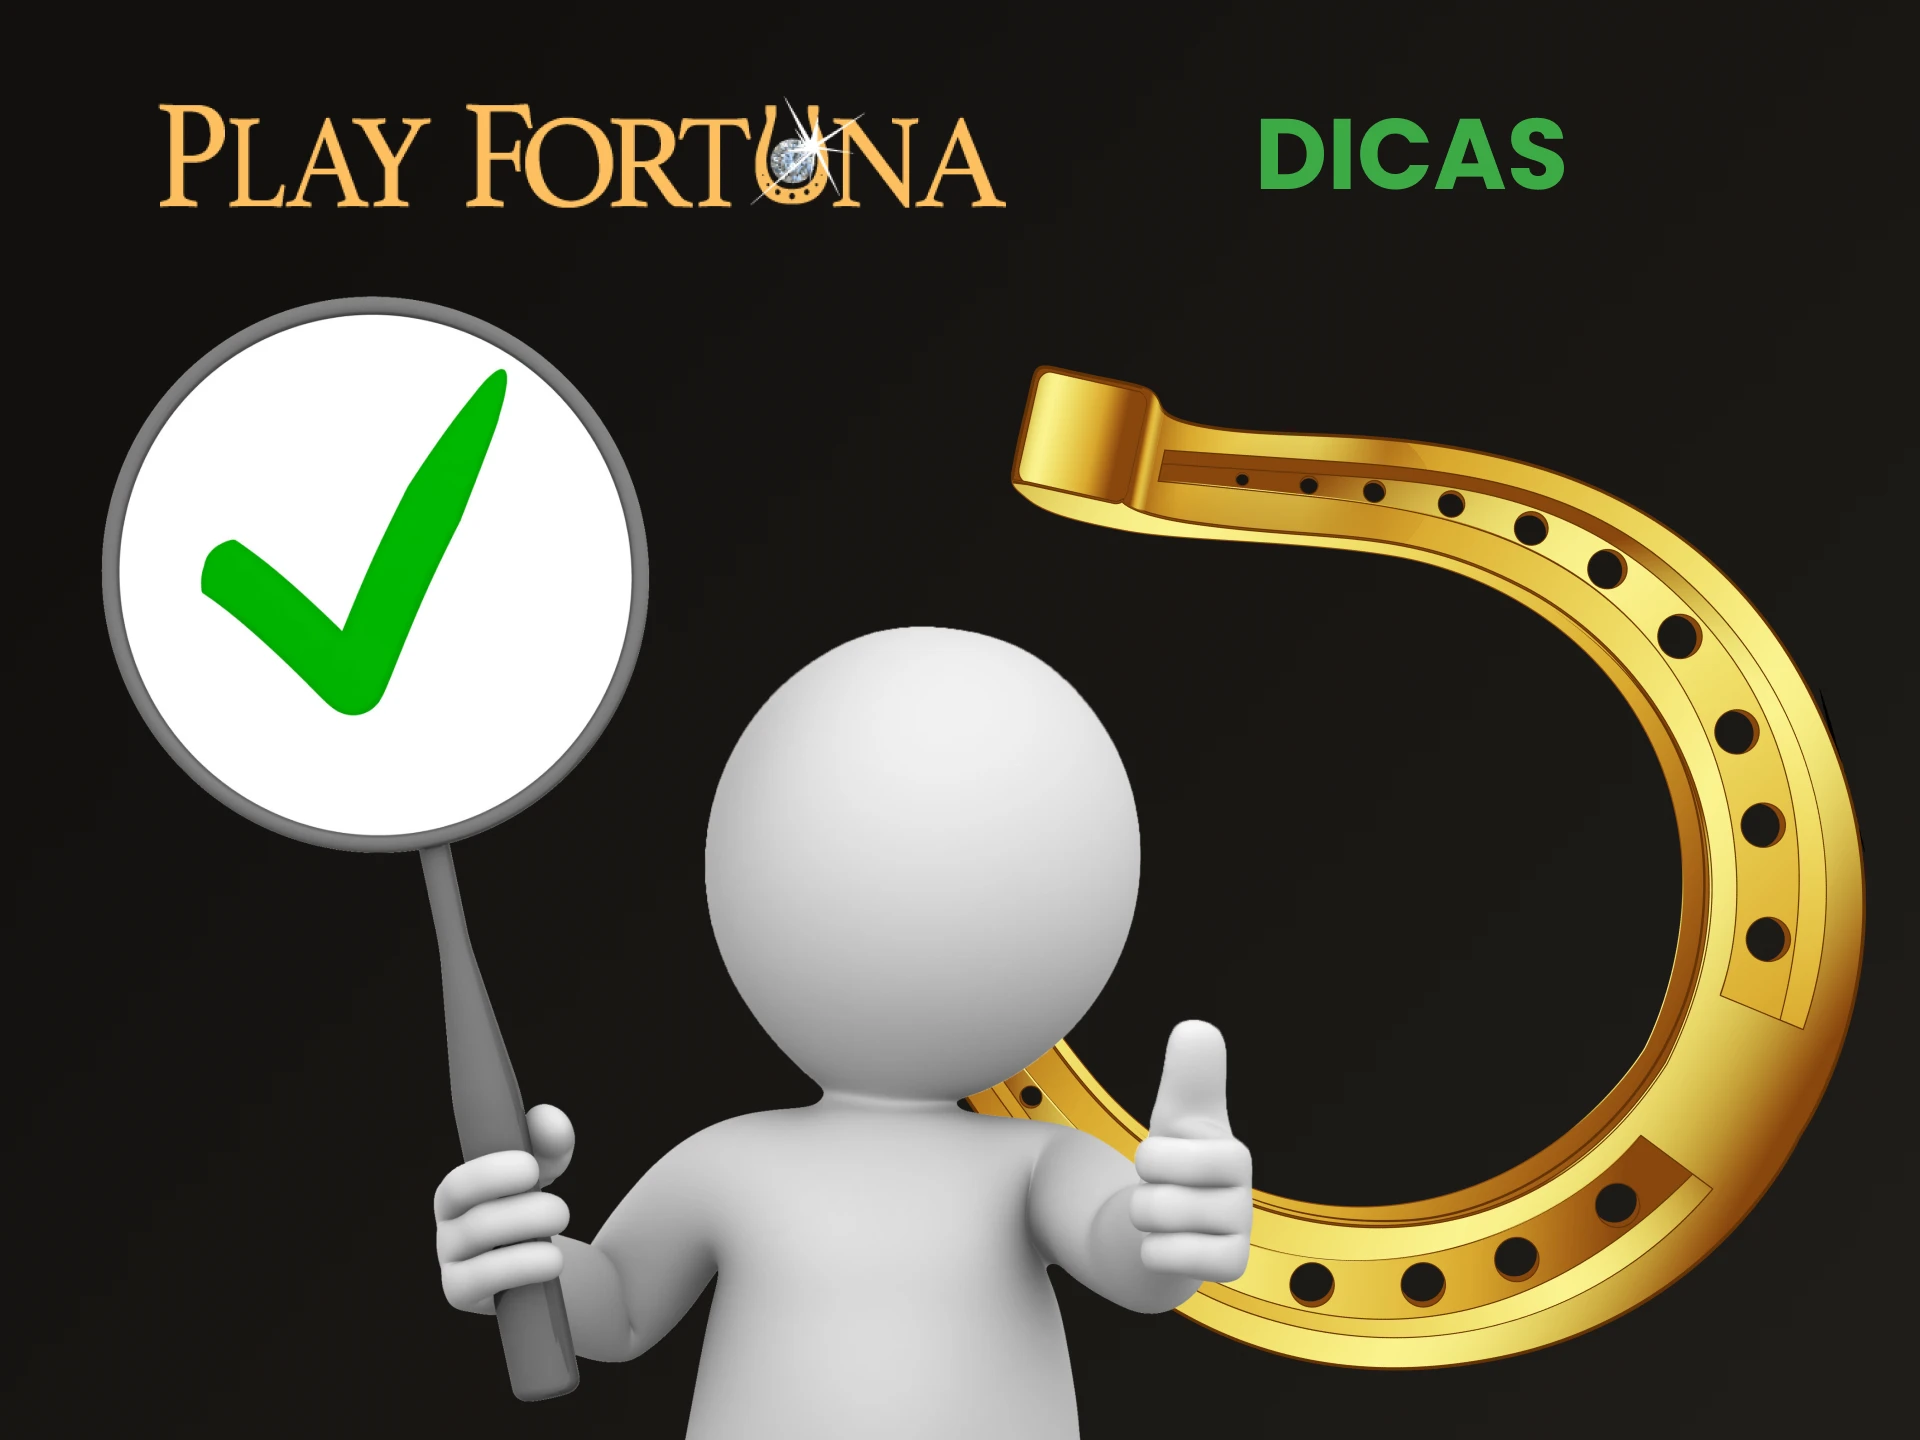 Aprenda dicas para jogos de azar responsáveis ​​no Play Fortuna.